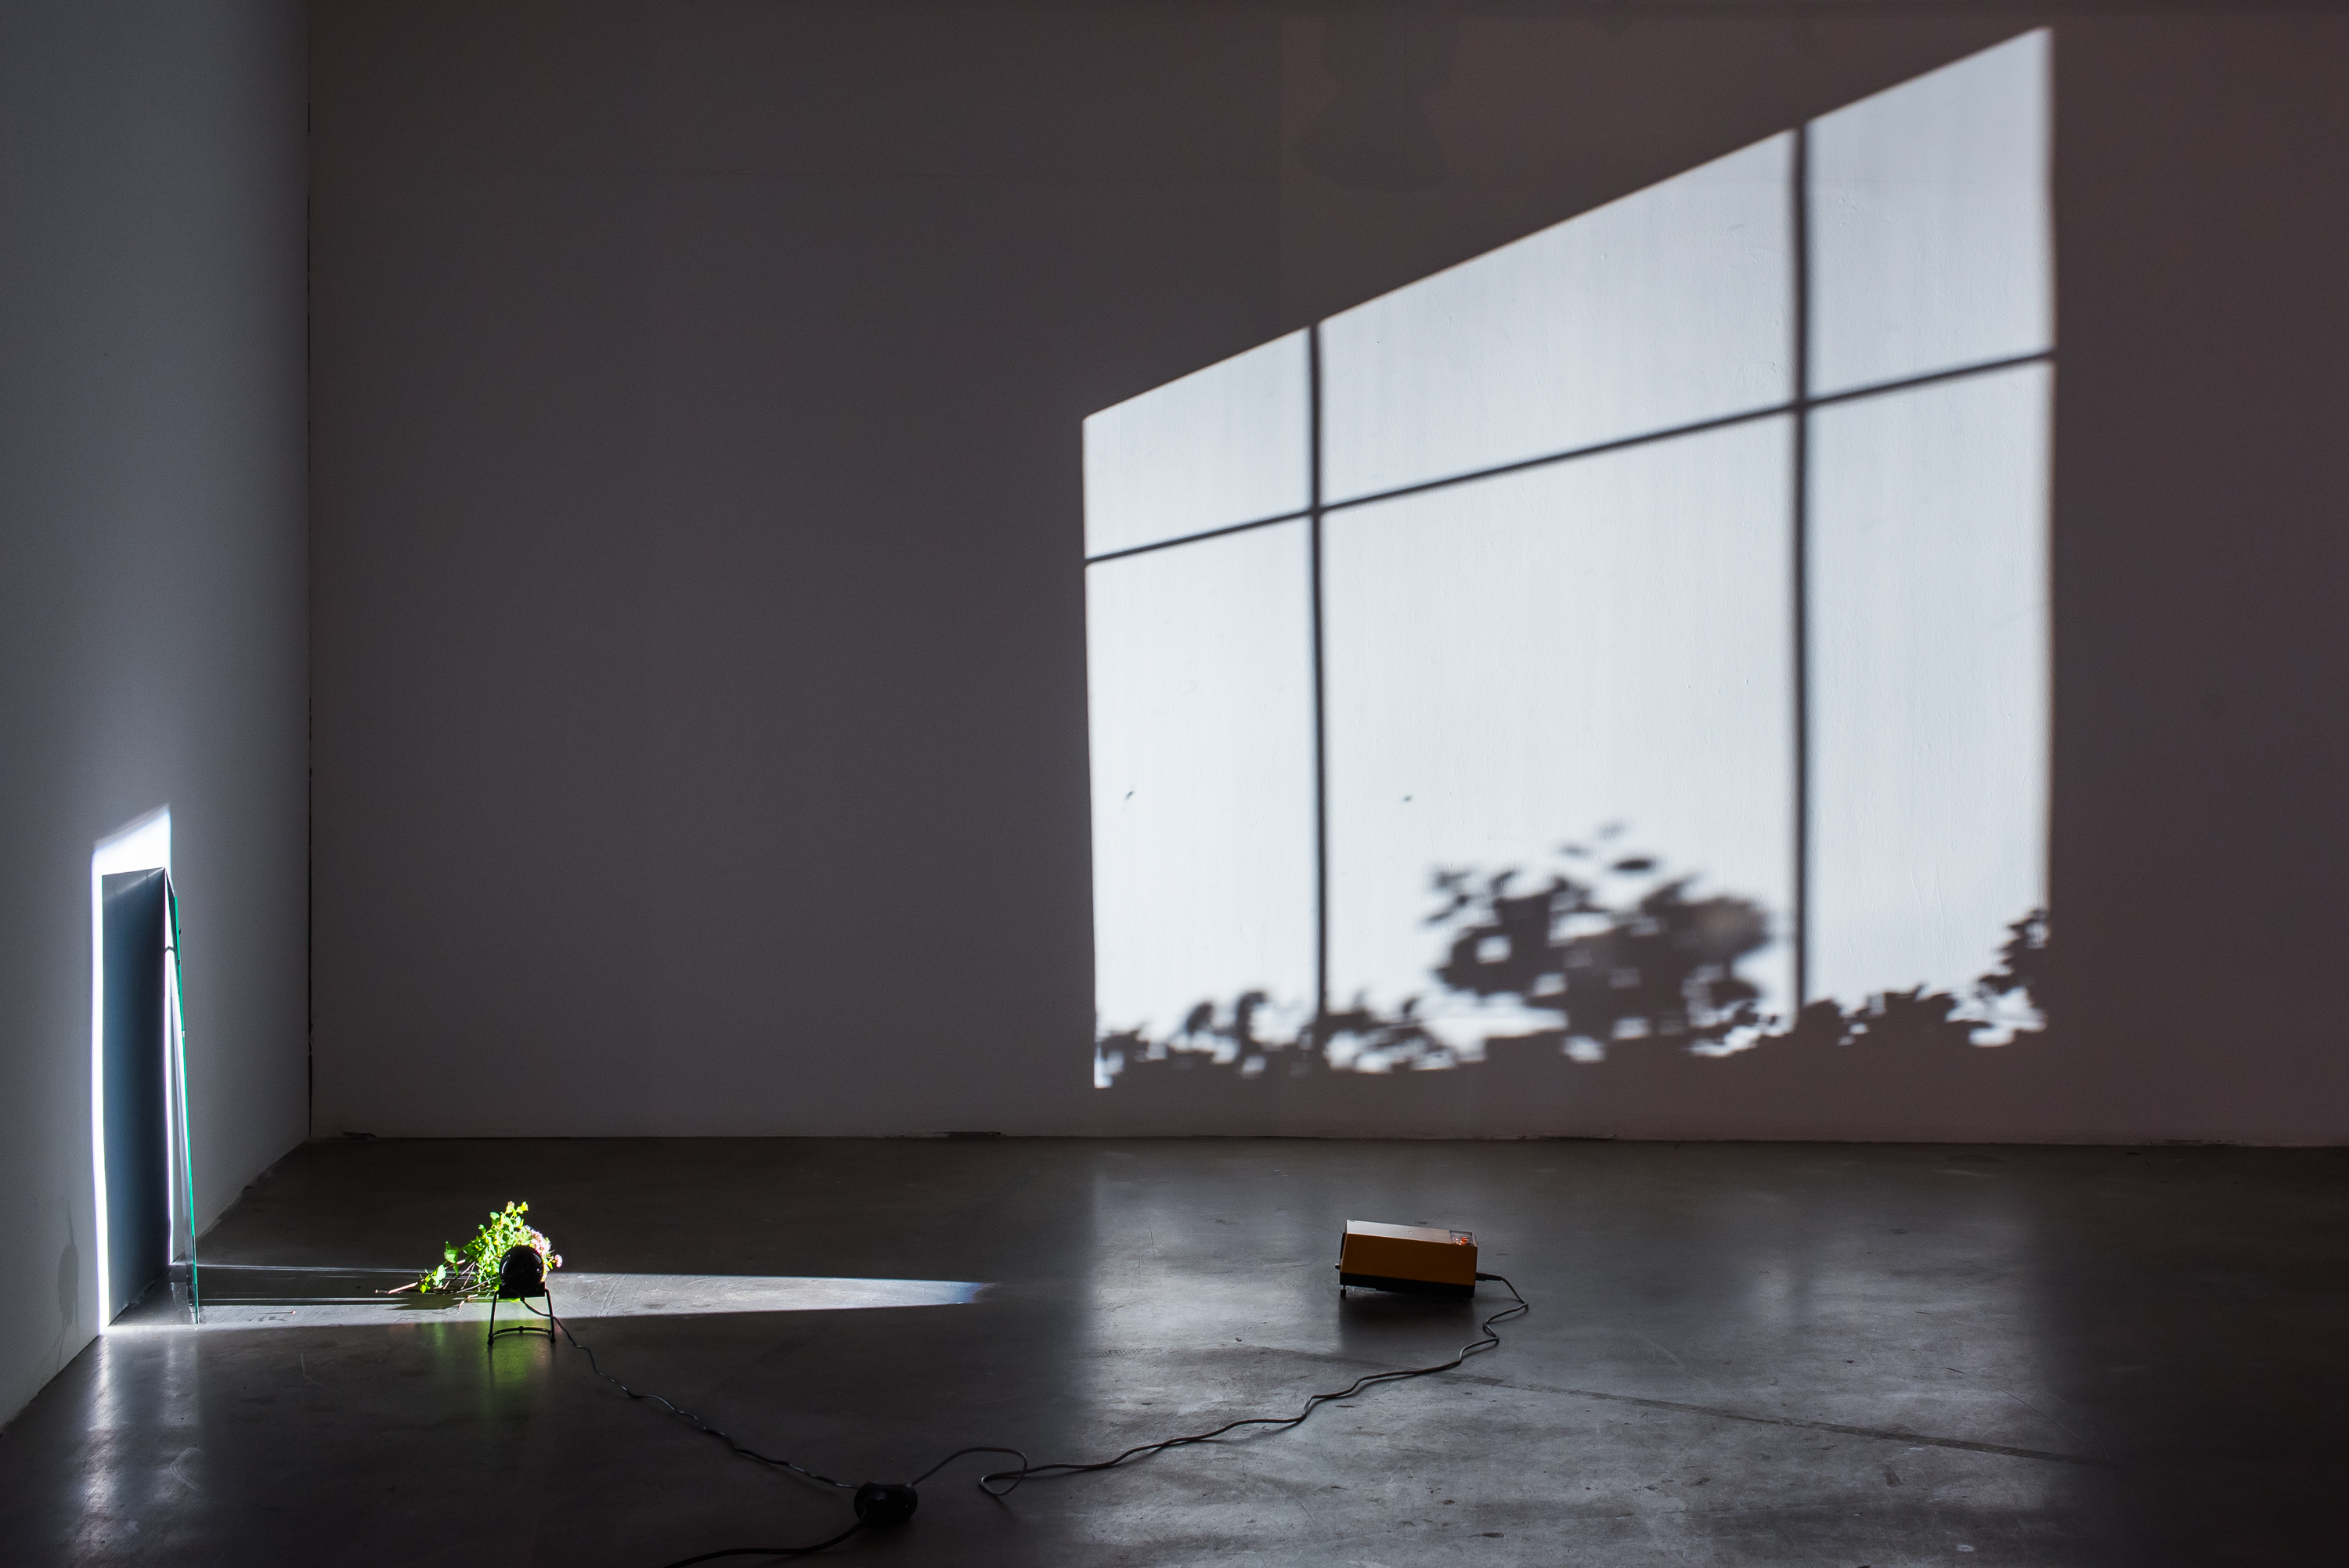 Ulrich Vogl, Okno, 2015, lustro, taśma klejąca, gałęzie, wentylator, źródło światła, zmienne wymiary, wł. artysty